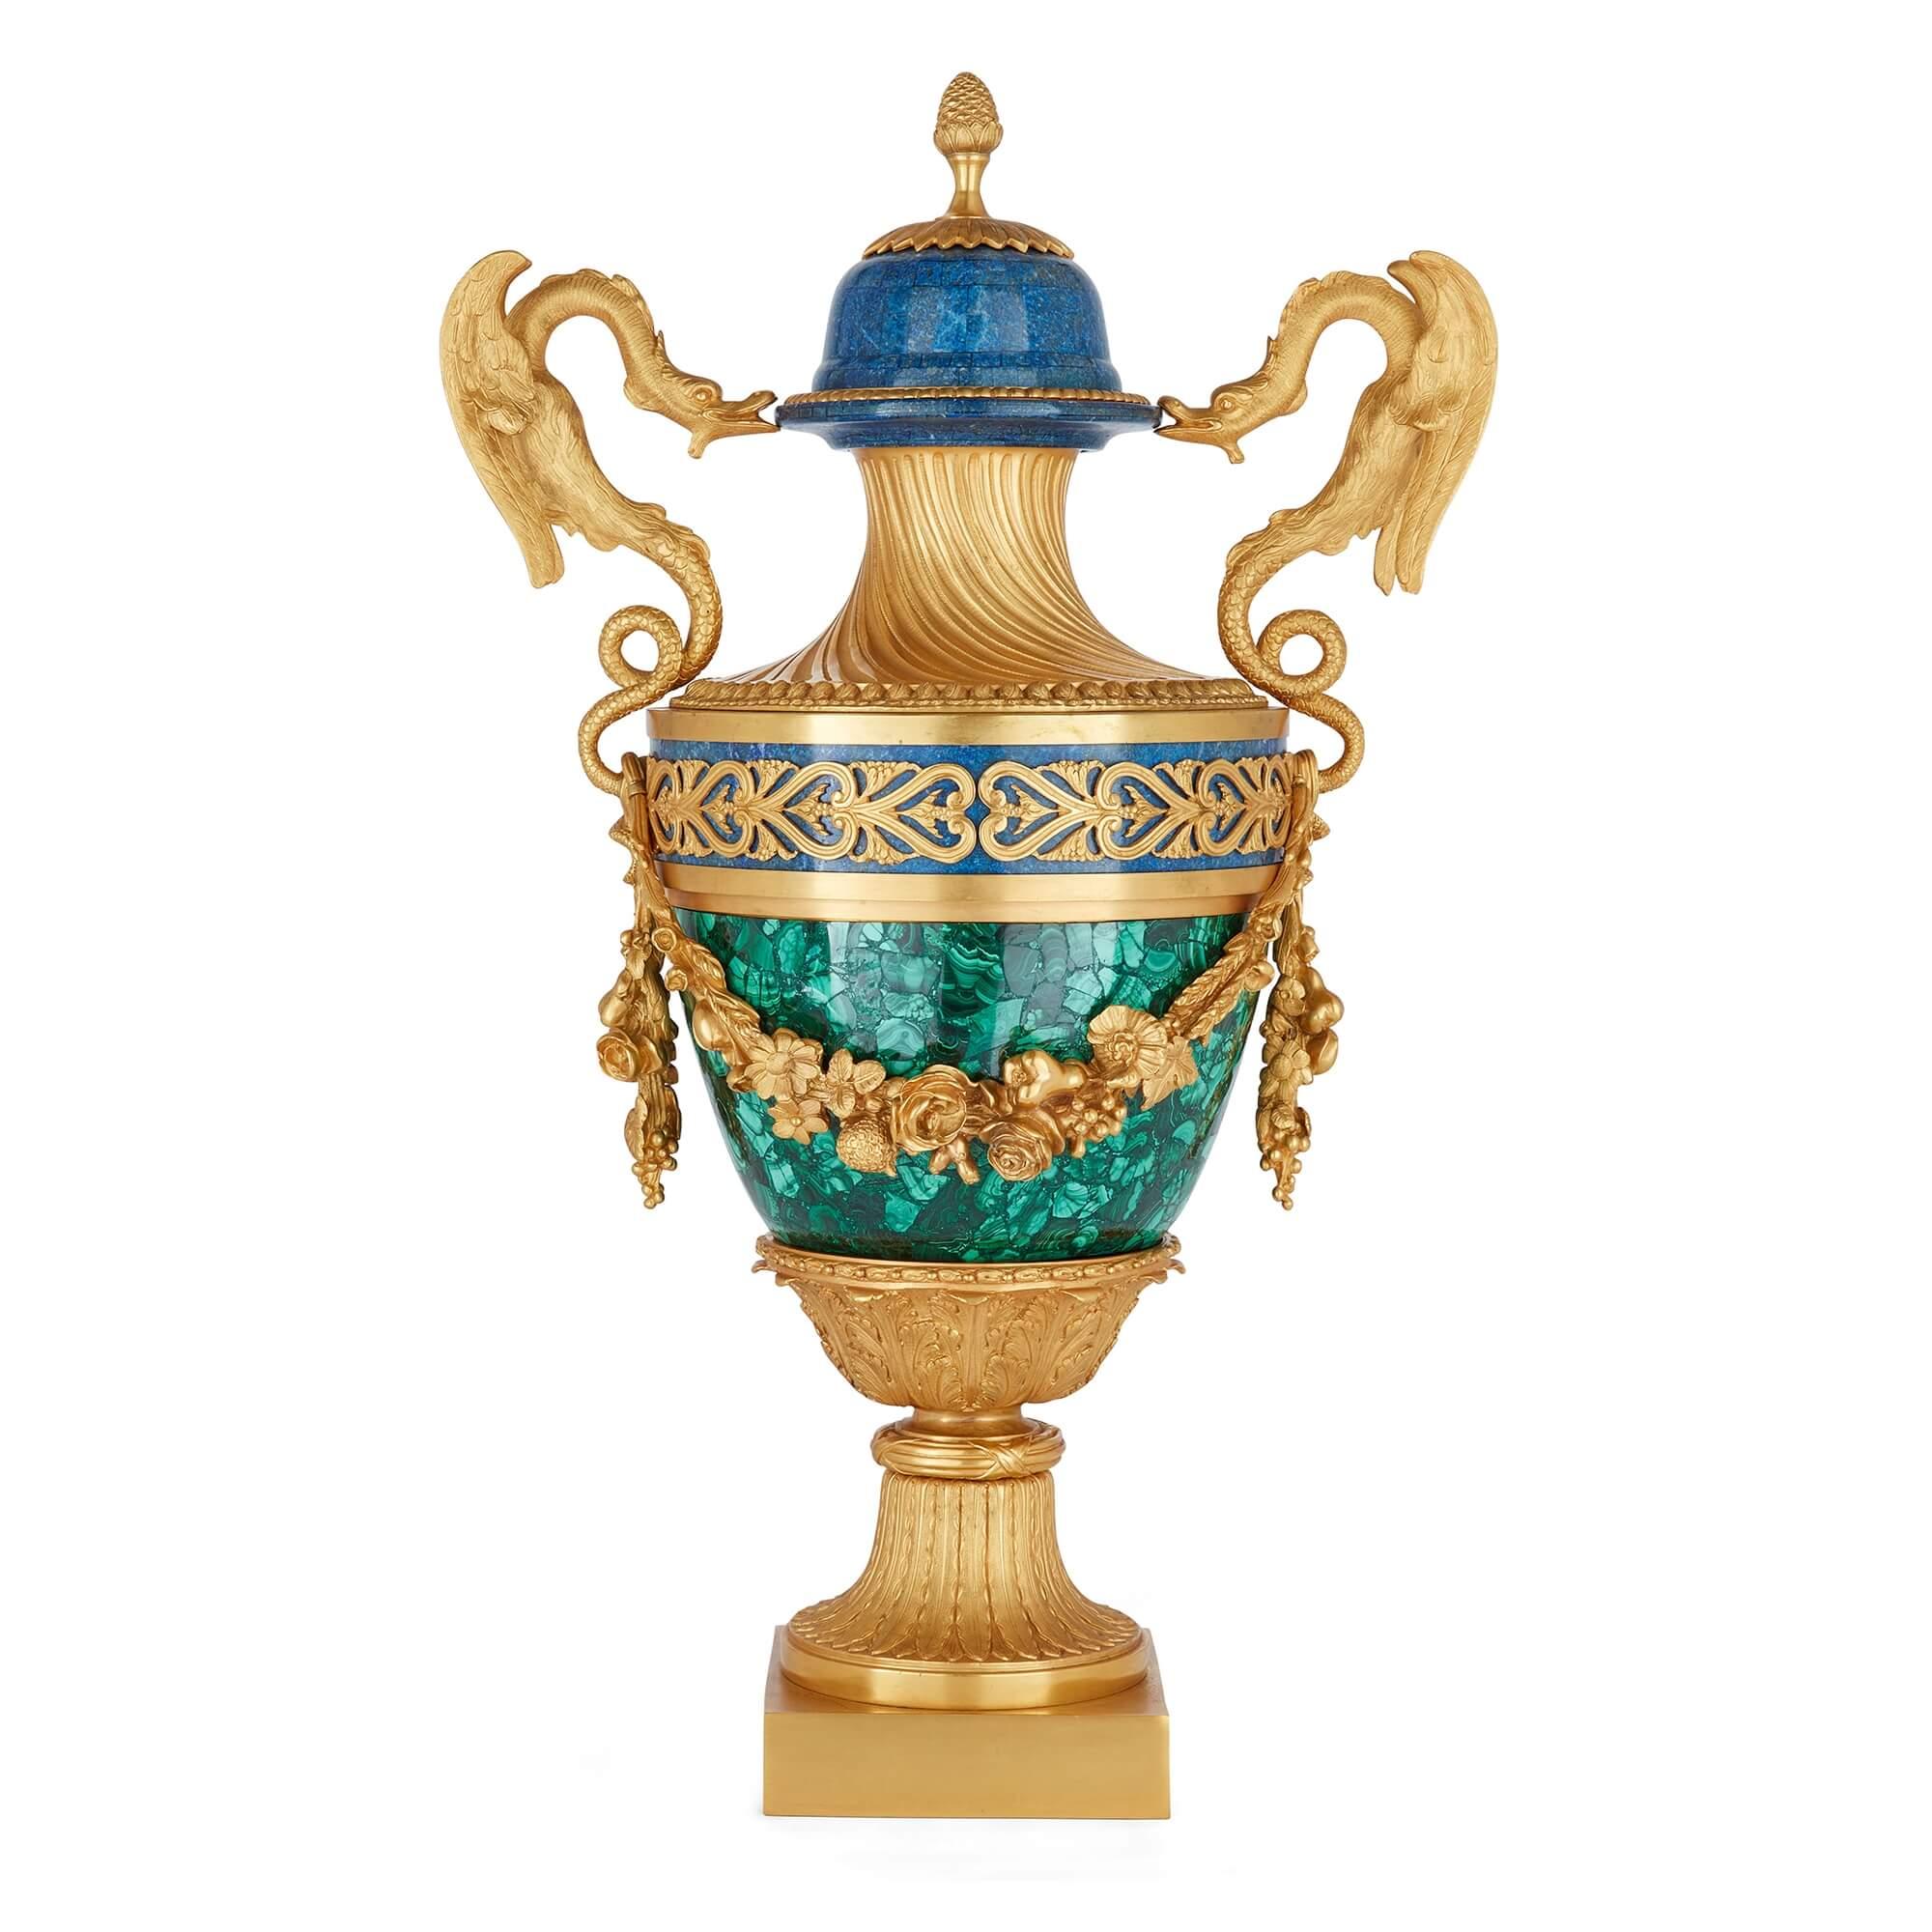 Paire de vases de style Empire français en malachite, lapis-lazuli et bronze doré
Français, 20ème siècle
Hauteur 78cm, largeur 47cm, profondeur 30cm

Réalisés par des artisans français, ces vases, grâce au mélange inhabituel de matériaux utilisés,